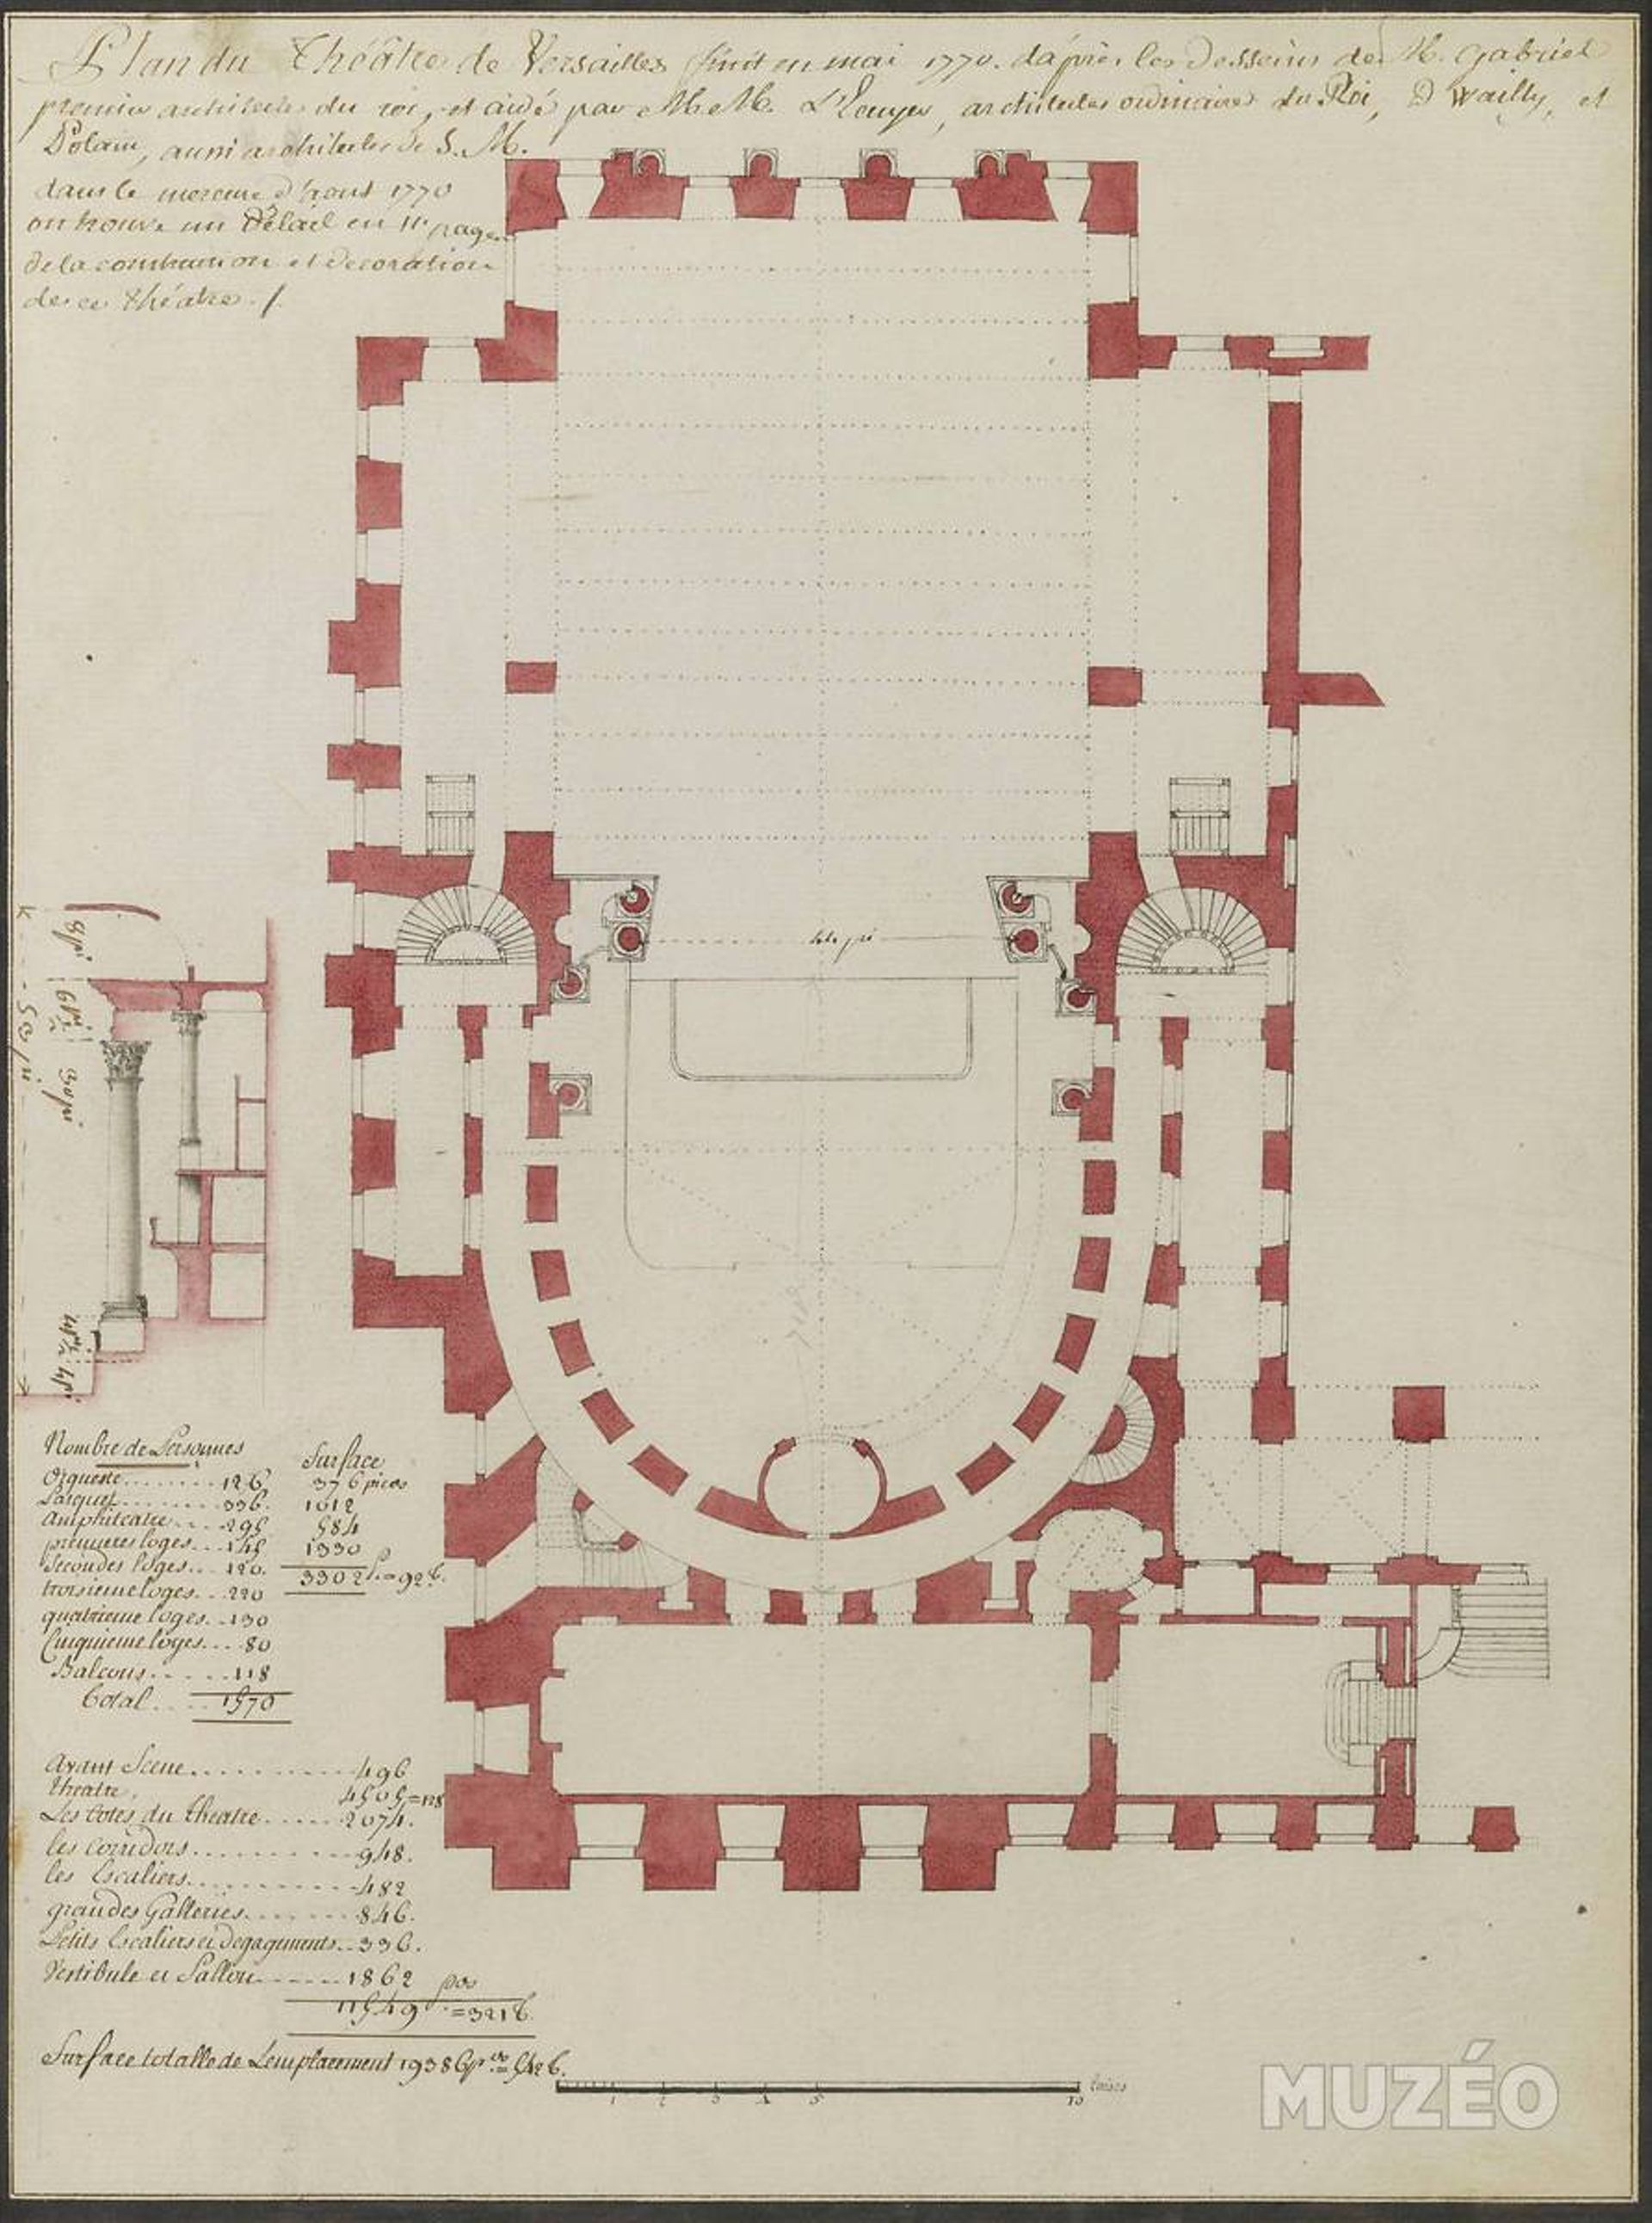 Plan de l'Opéra Royal de Versailles présenté par Ange-Jacques Gabriel à Louis XV